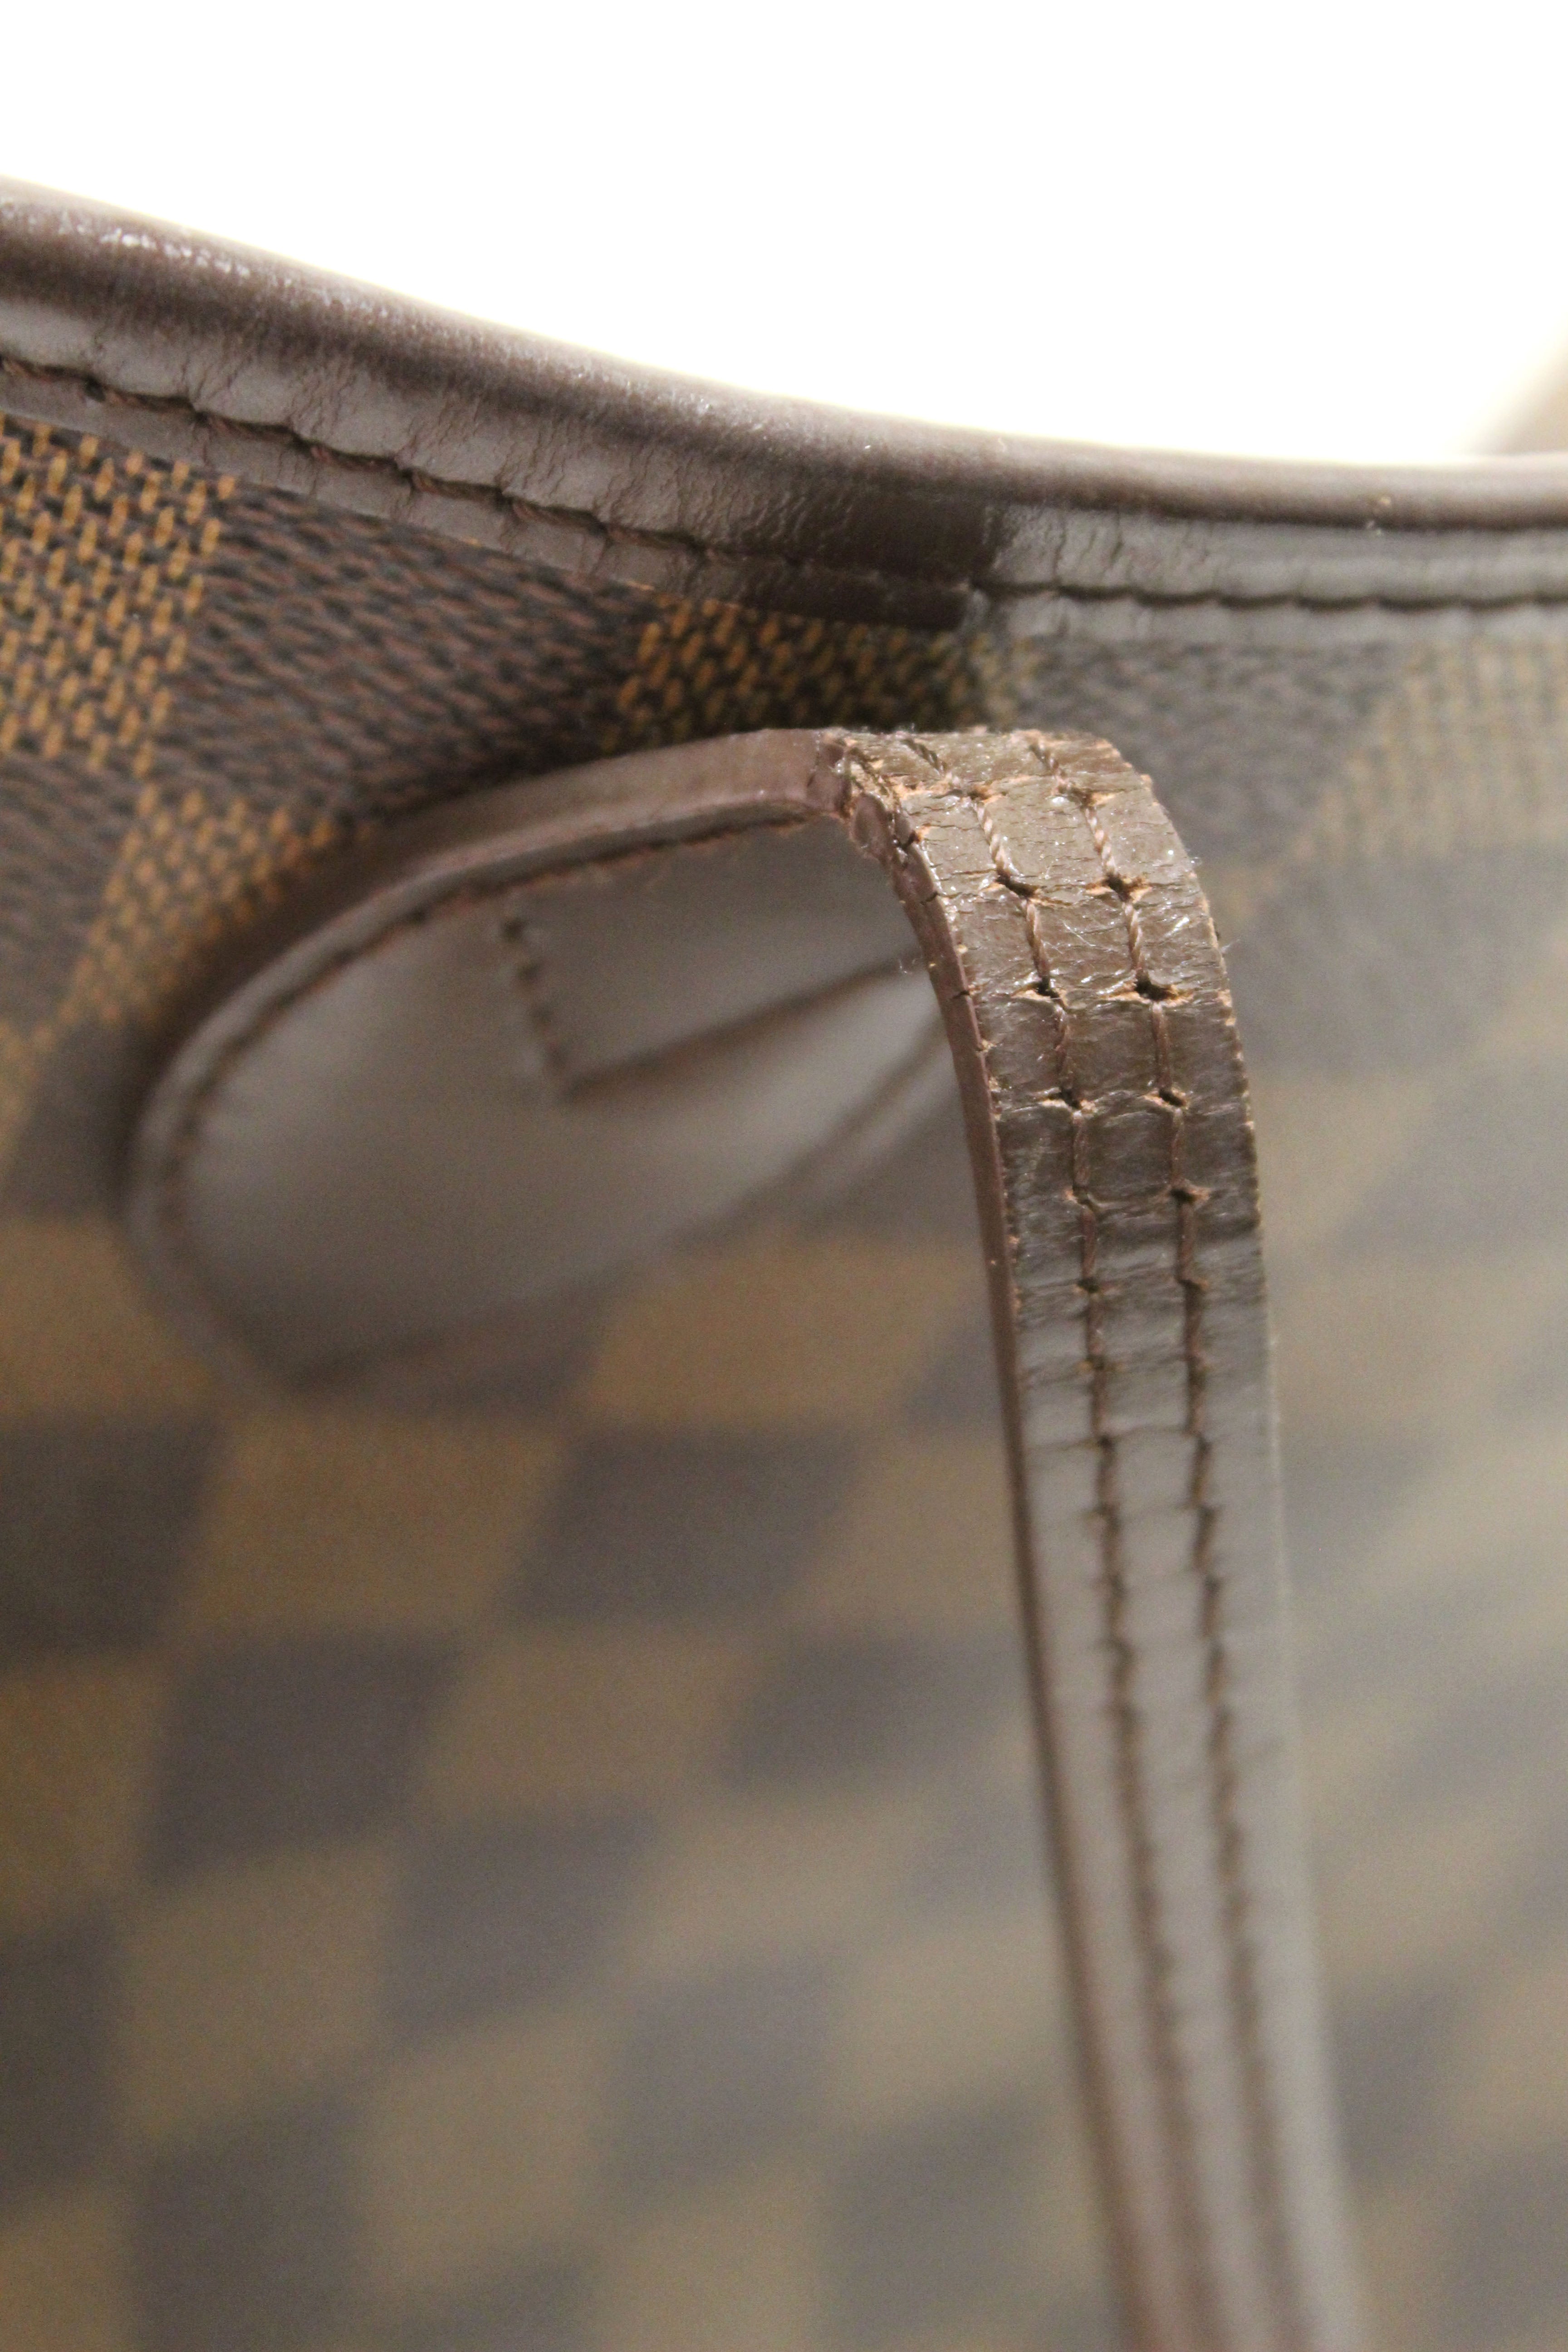 Authentic Louis Vuitton Damier Ebene Canvas Neverfull MM Shoulder Tote Bag